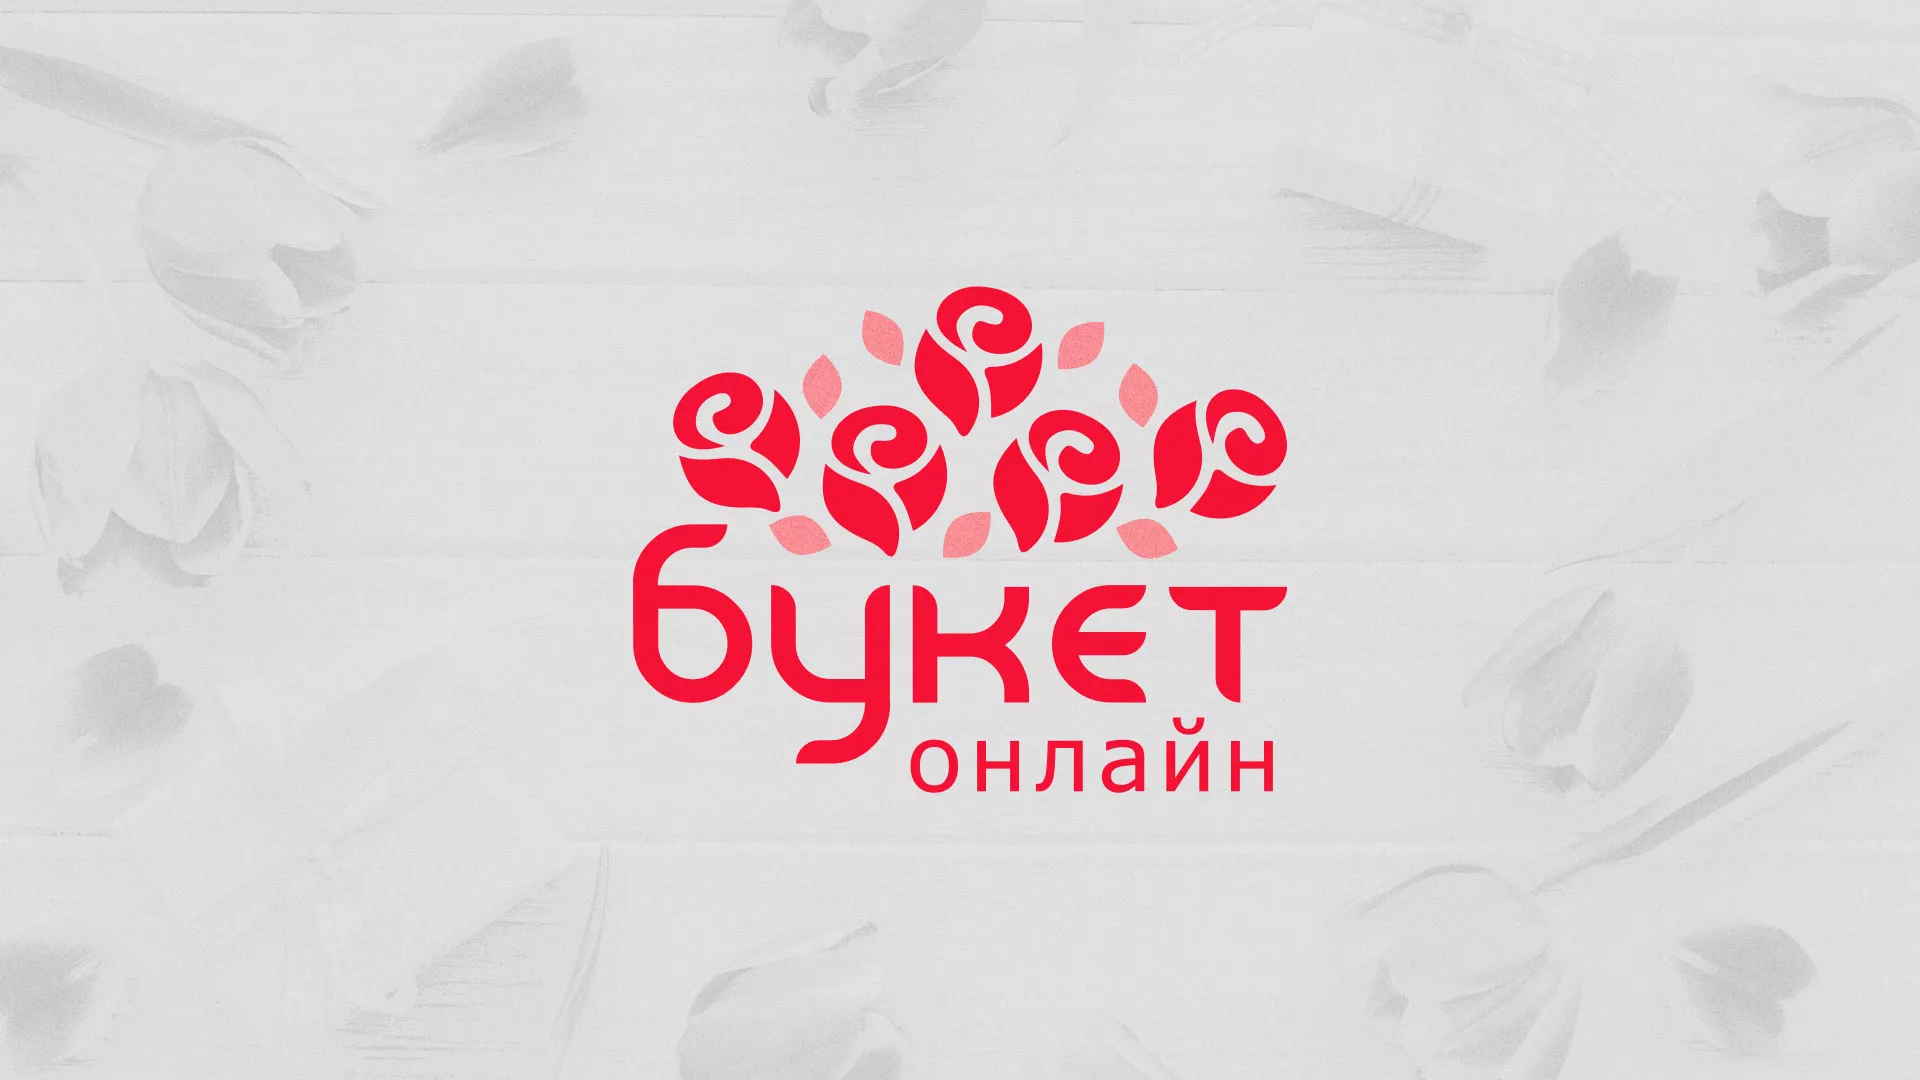 Создание интернет-магазина «Букет-онлайн» по цветам в Губкине